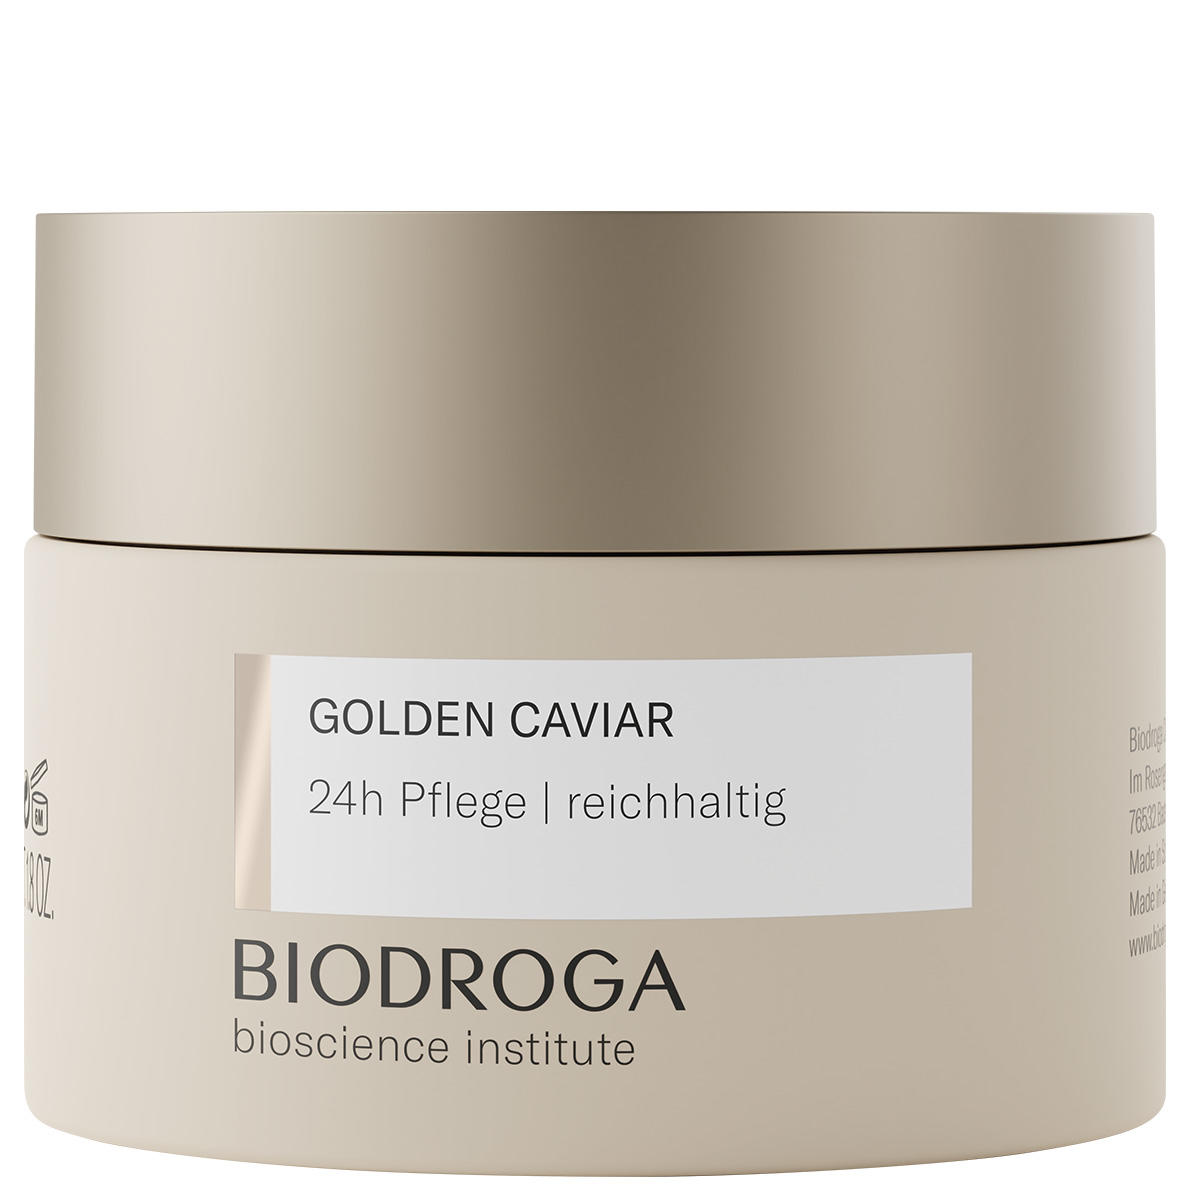 BIODROGA Bioscience Institute GOLDEN CAVIAR 24h care rich 50 ml - 1